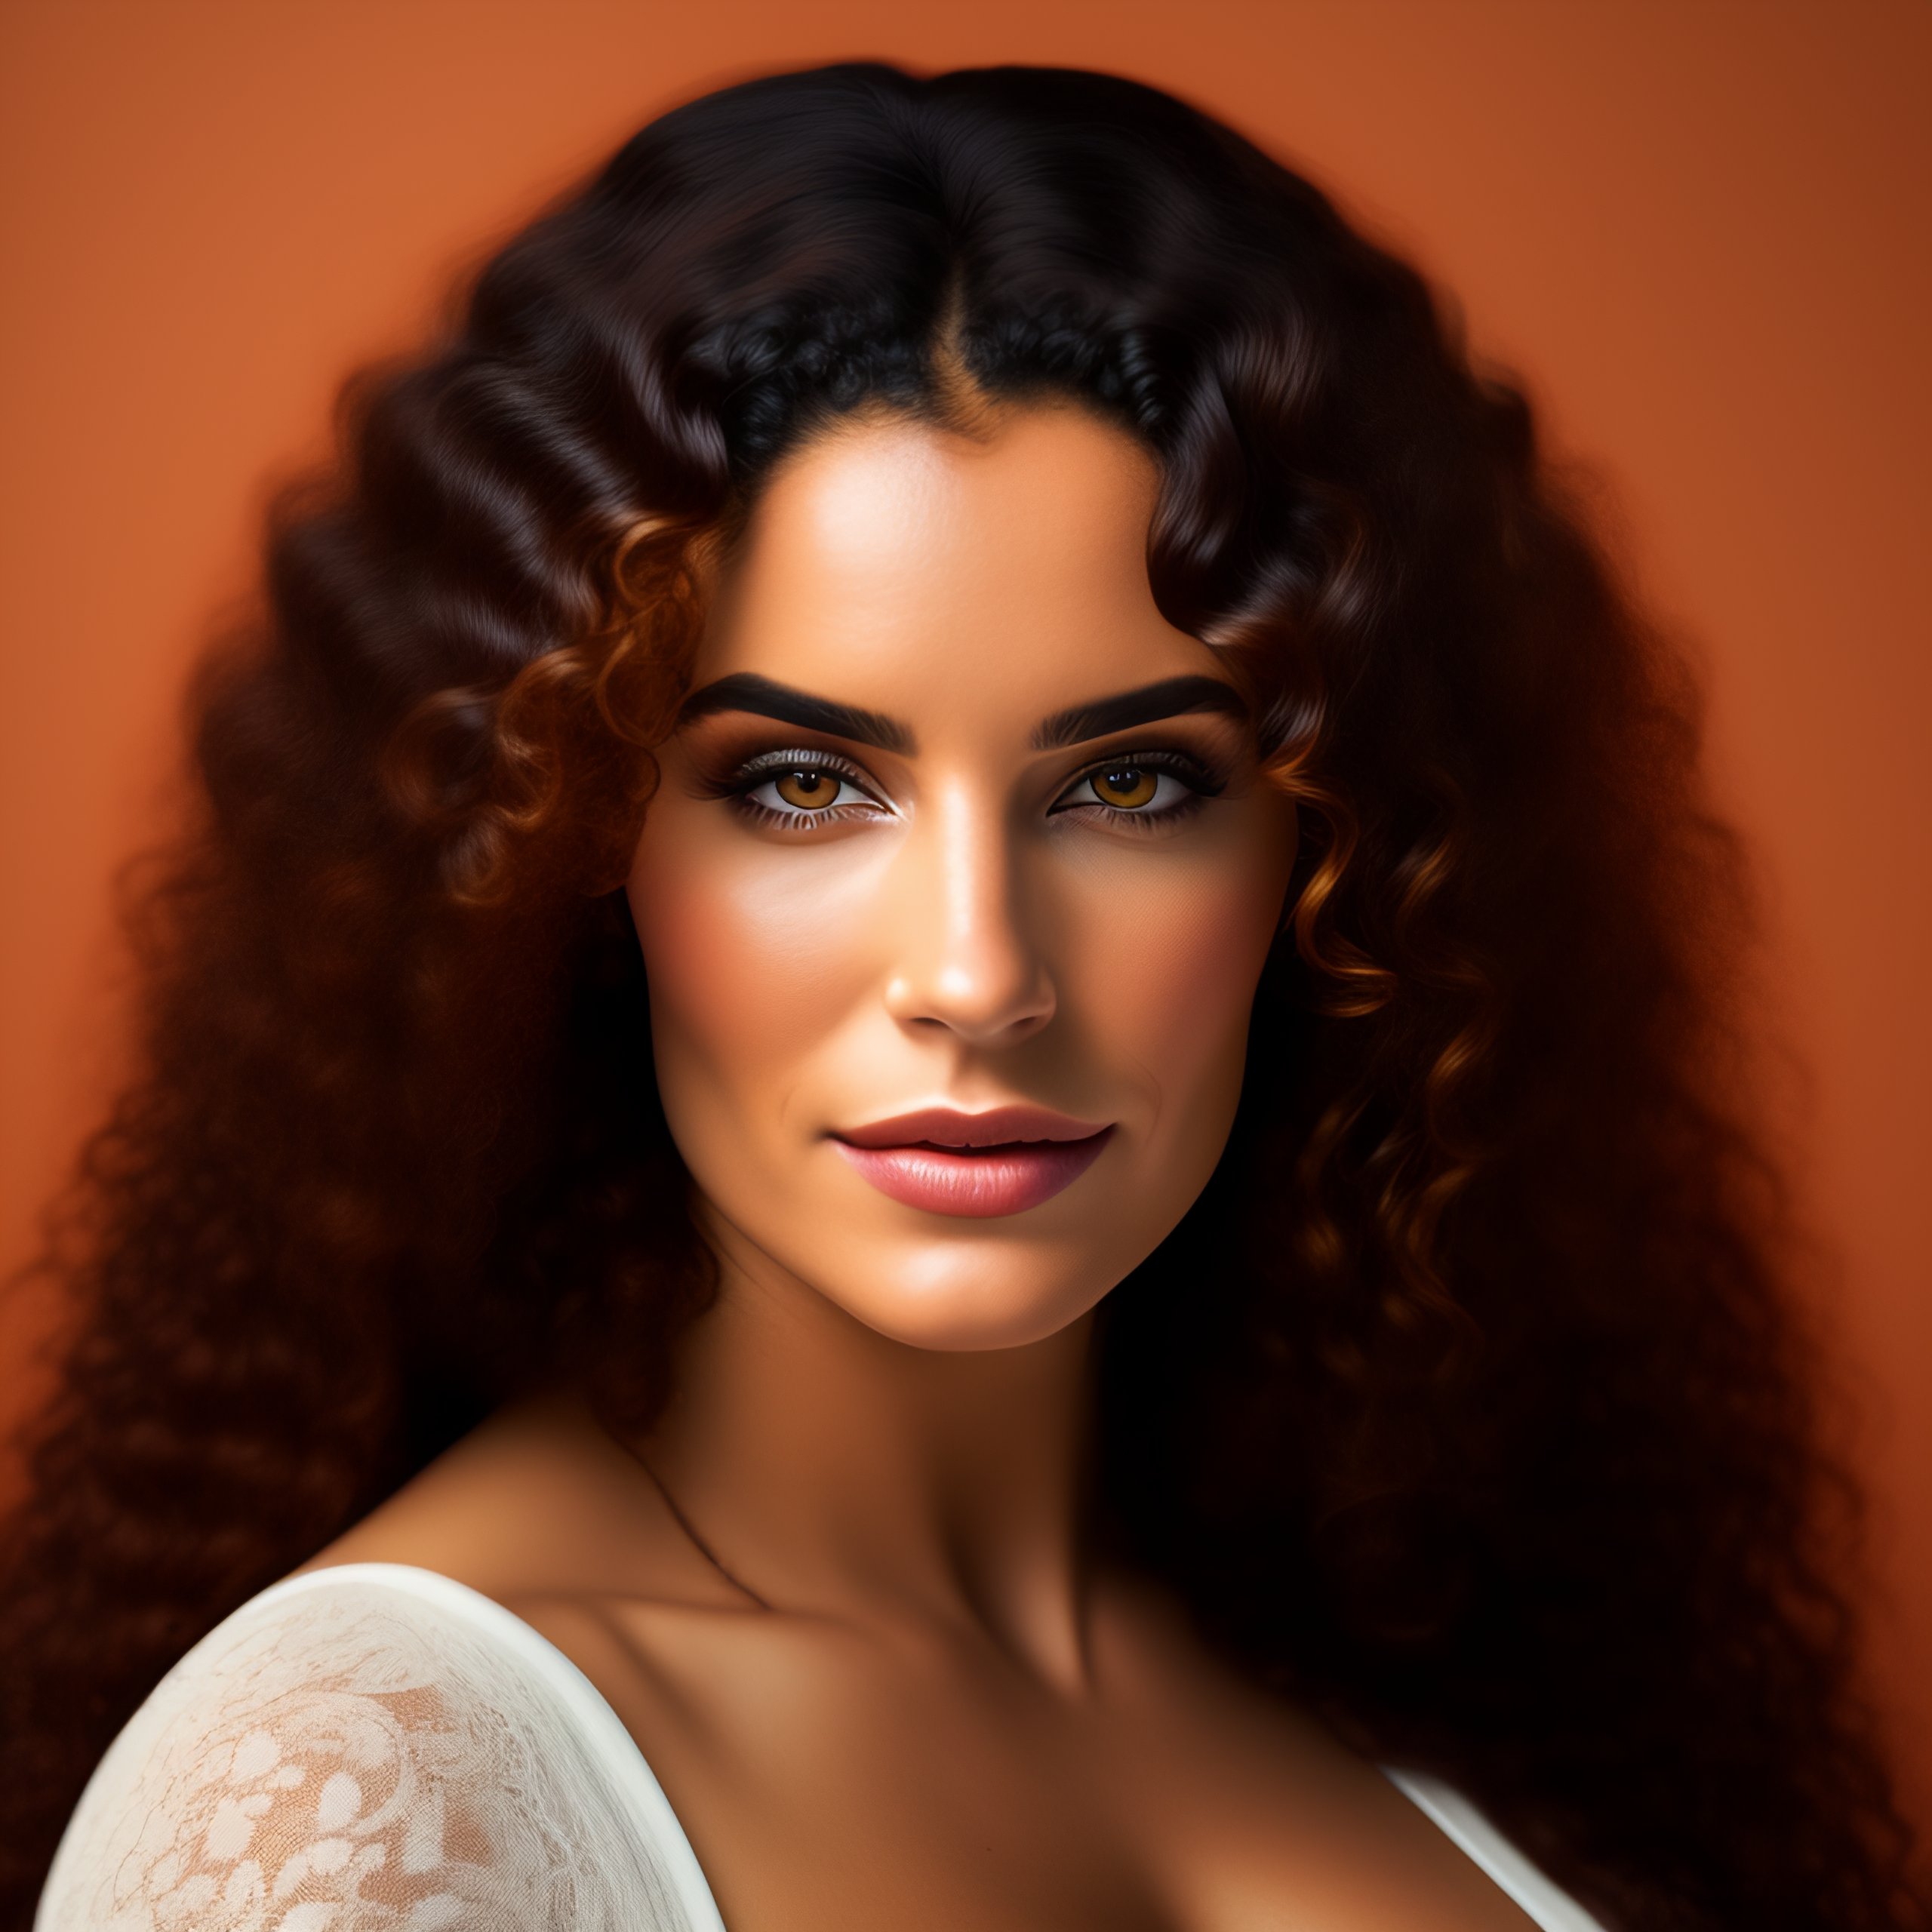 mediterranean women facial hair